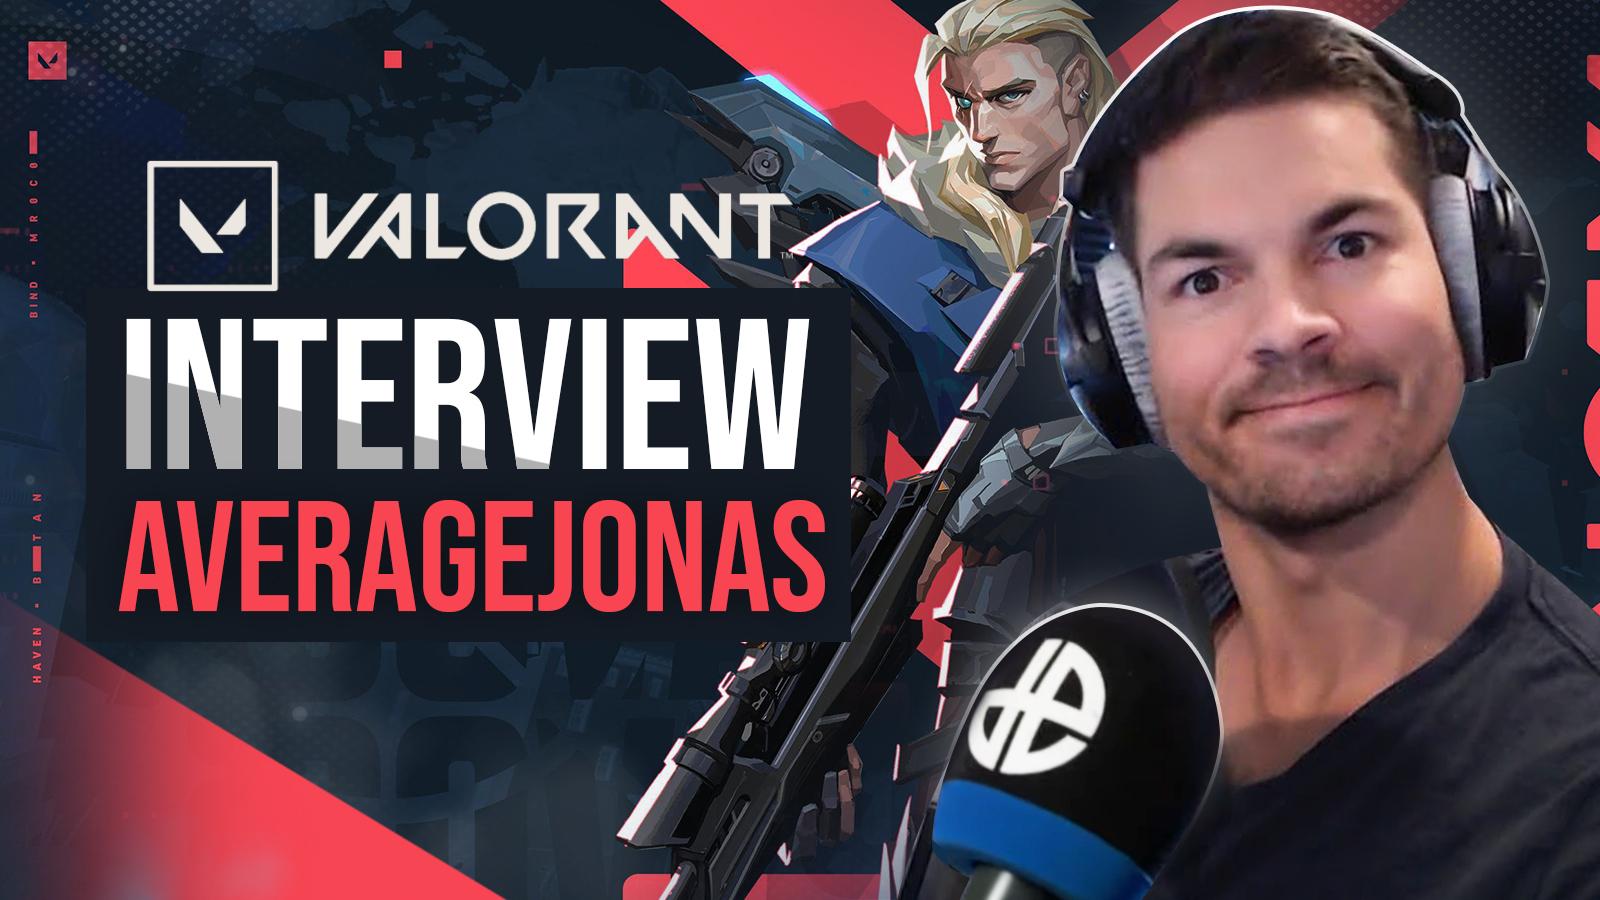 Valorant Average Jonas Interview